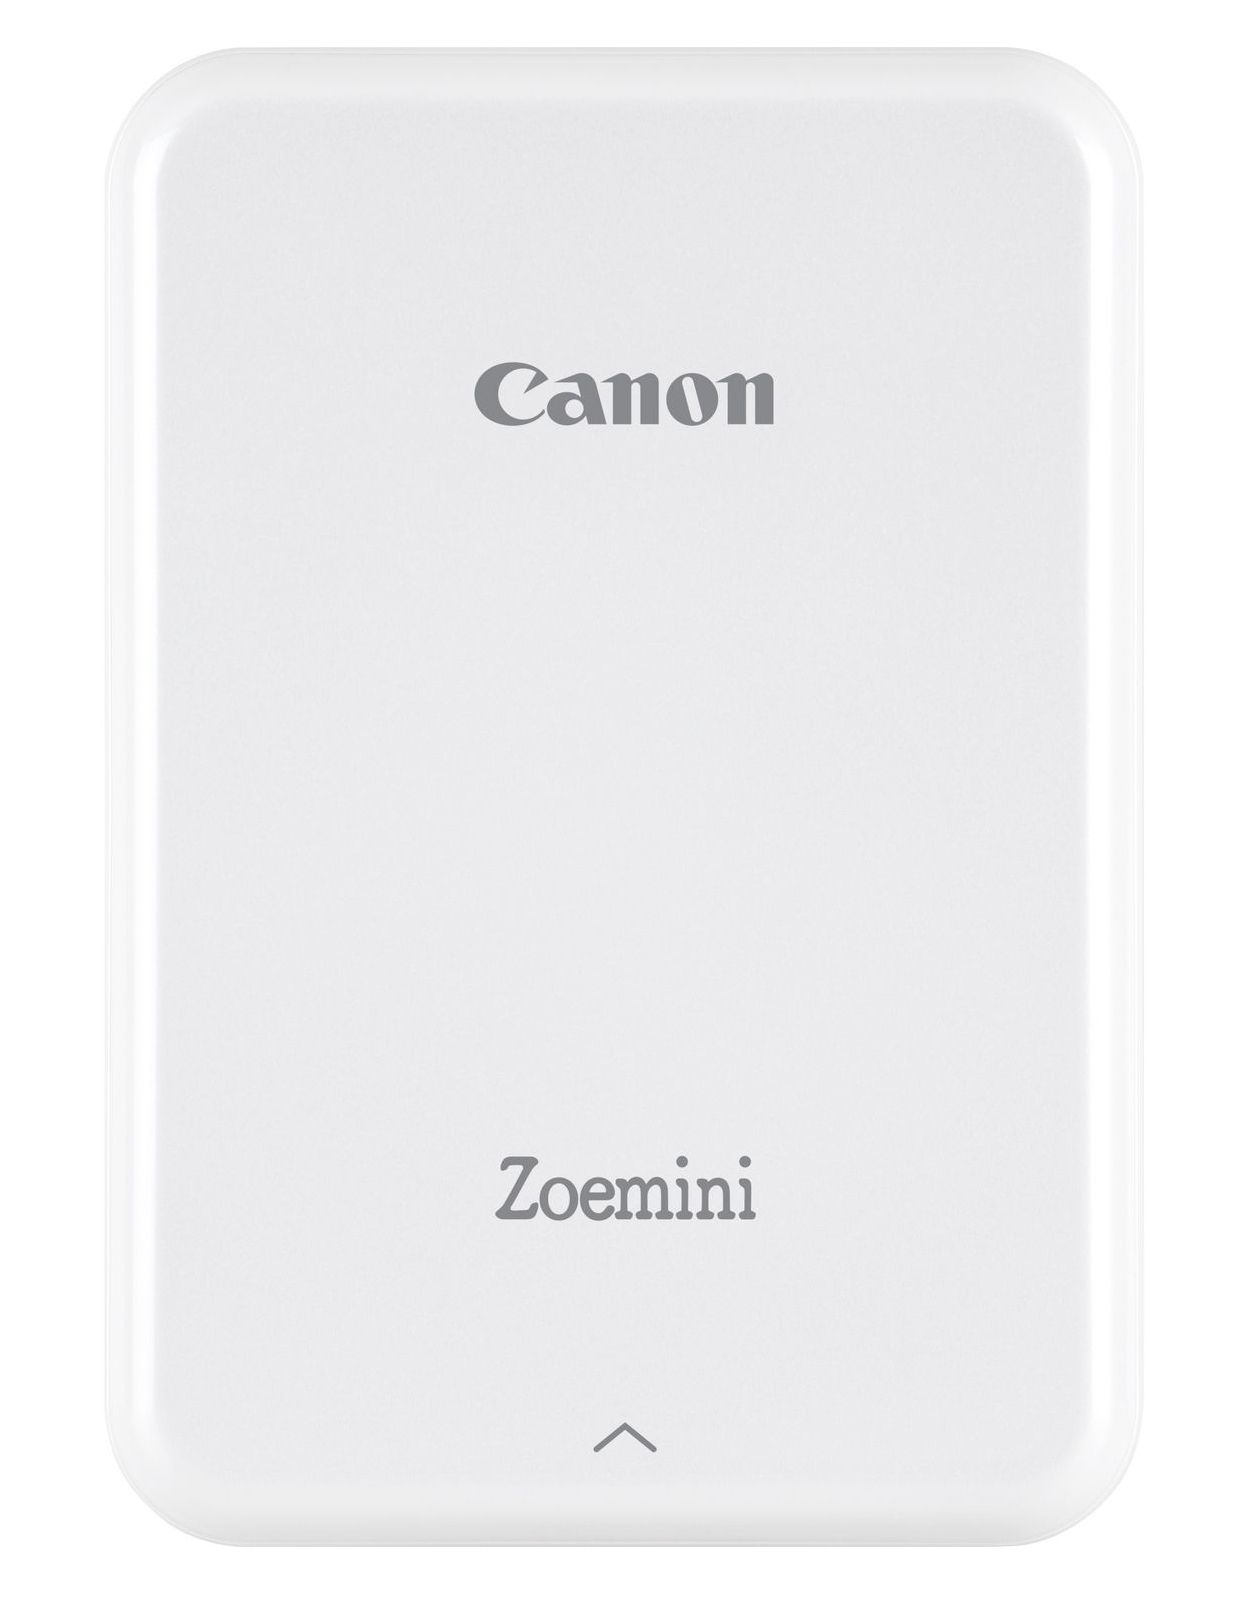 Canon Zoemini Portable Photo Printer Silver